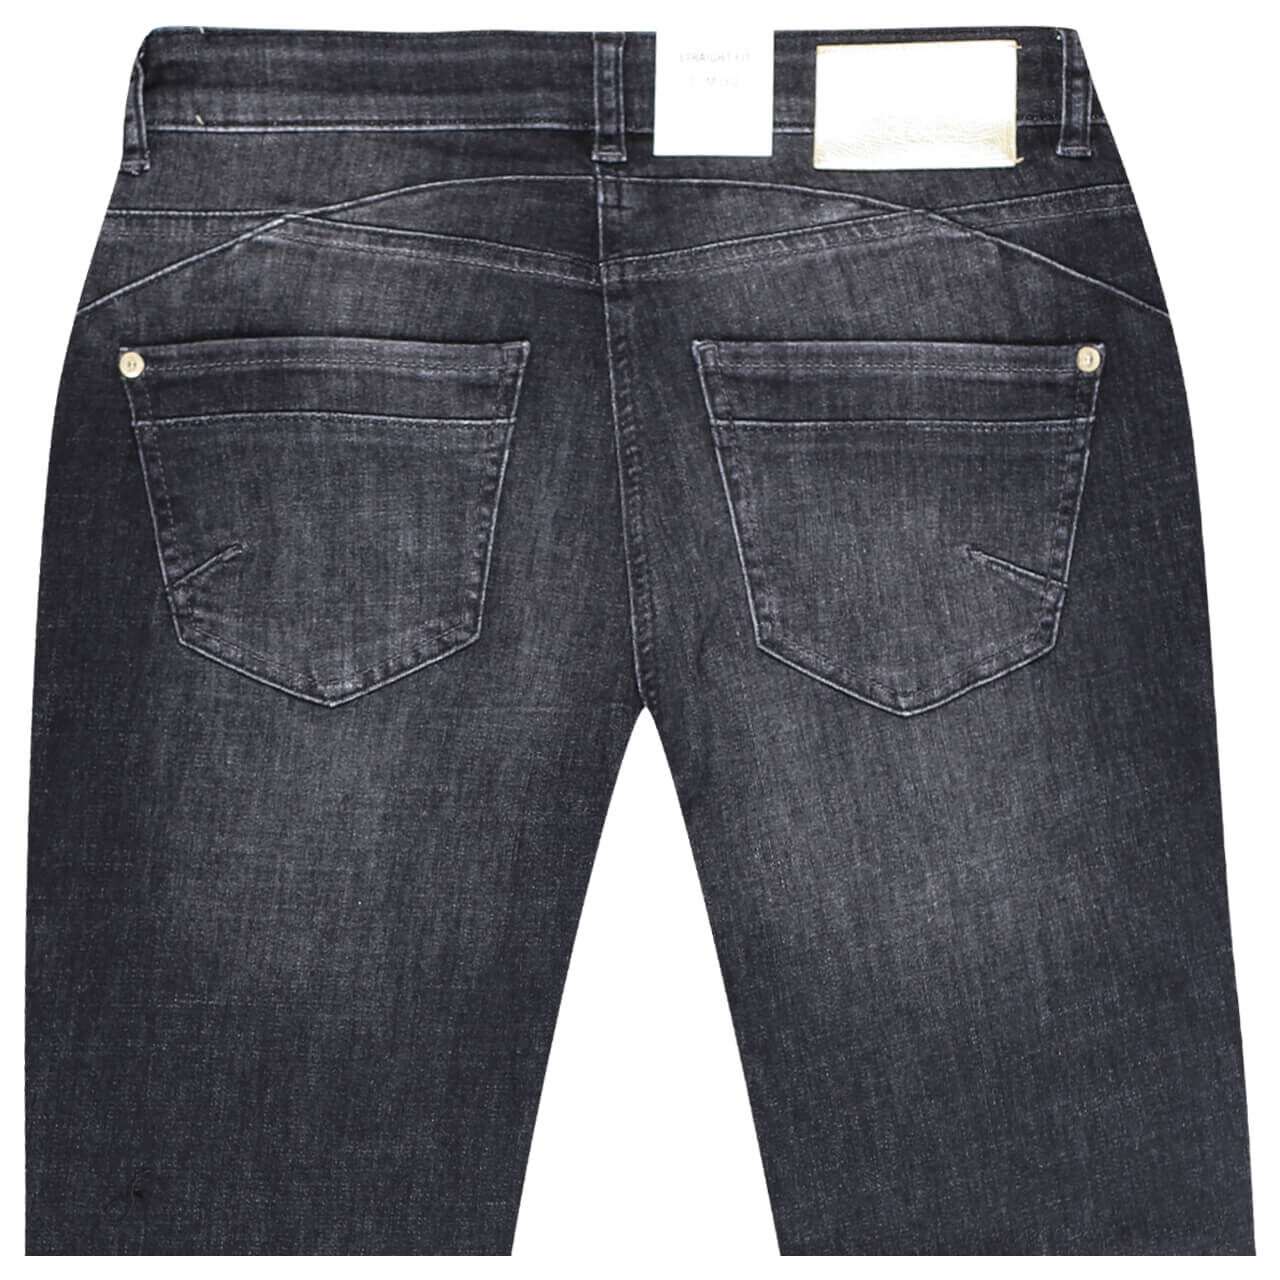 MAC Rich Slim 7/8 Jeans dark grey sequin hole